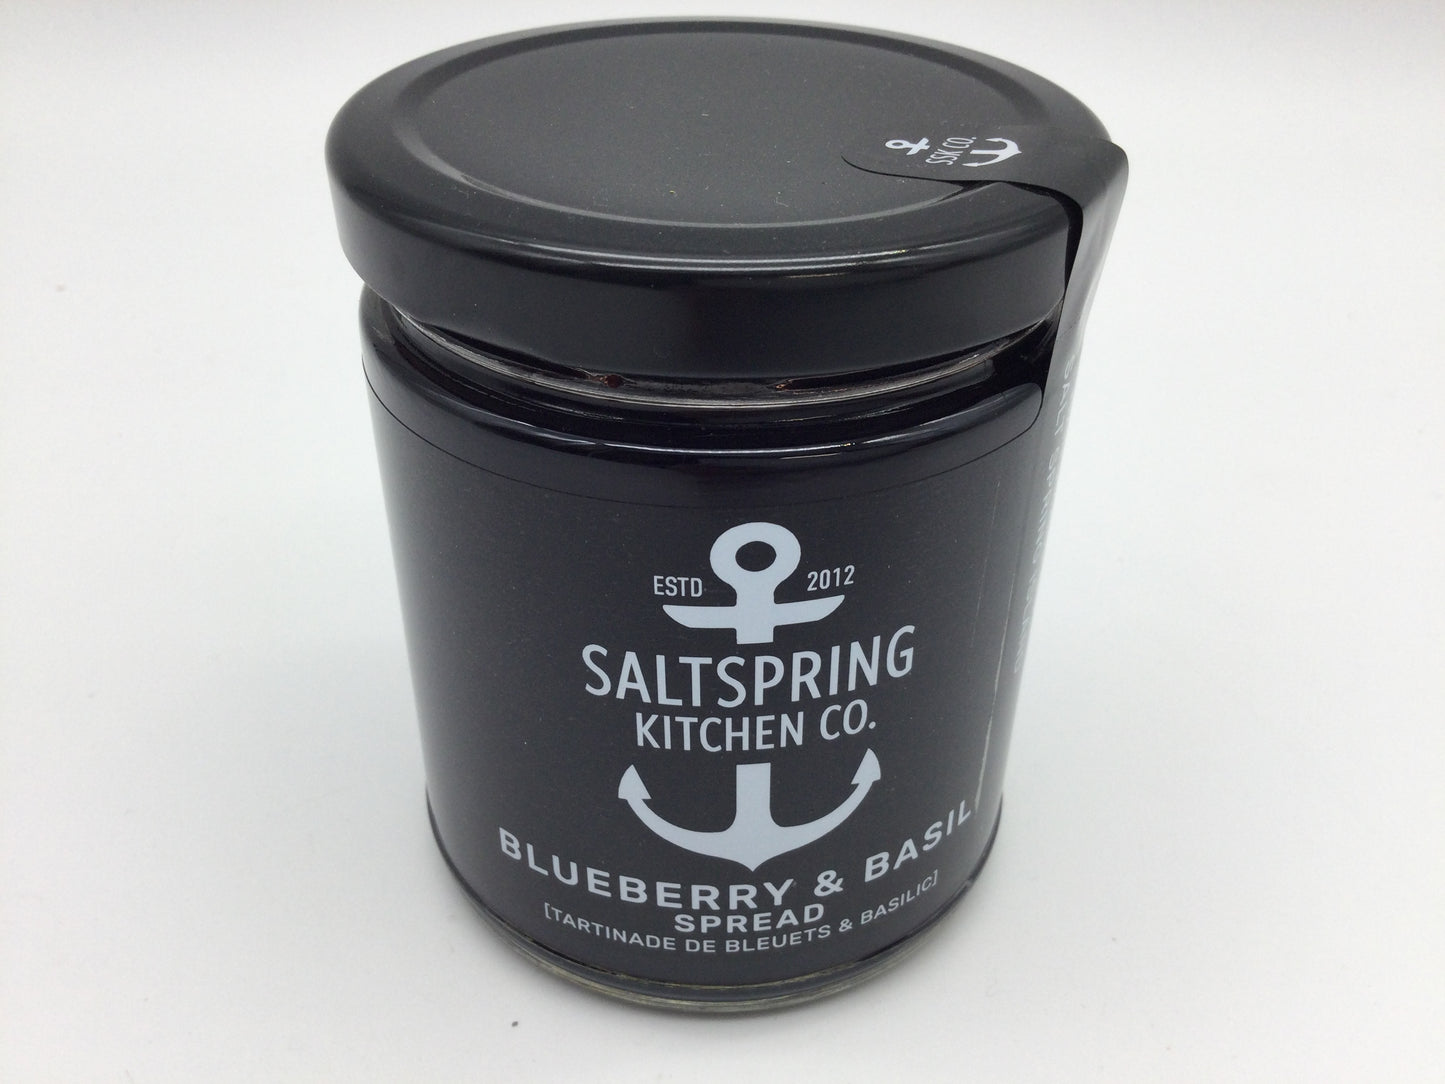 Salt Spring Kitchen Company - Blueberry & Basil